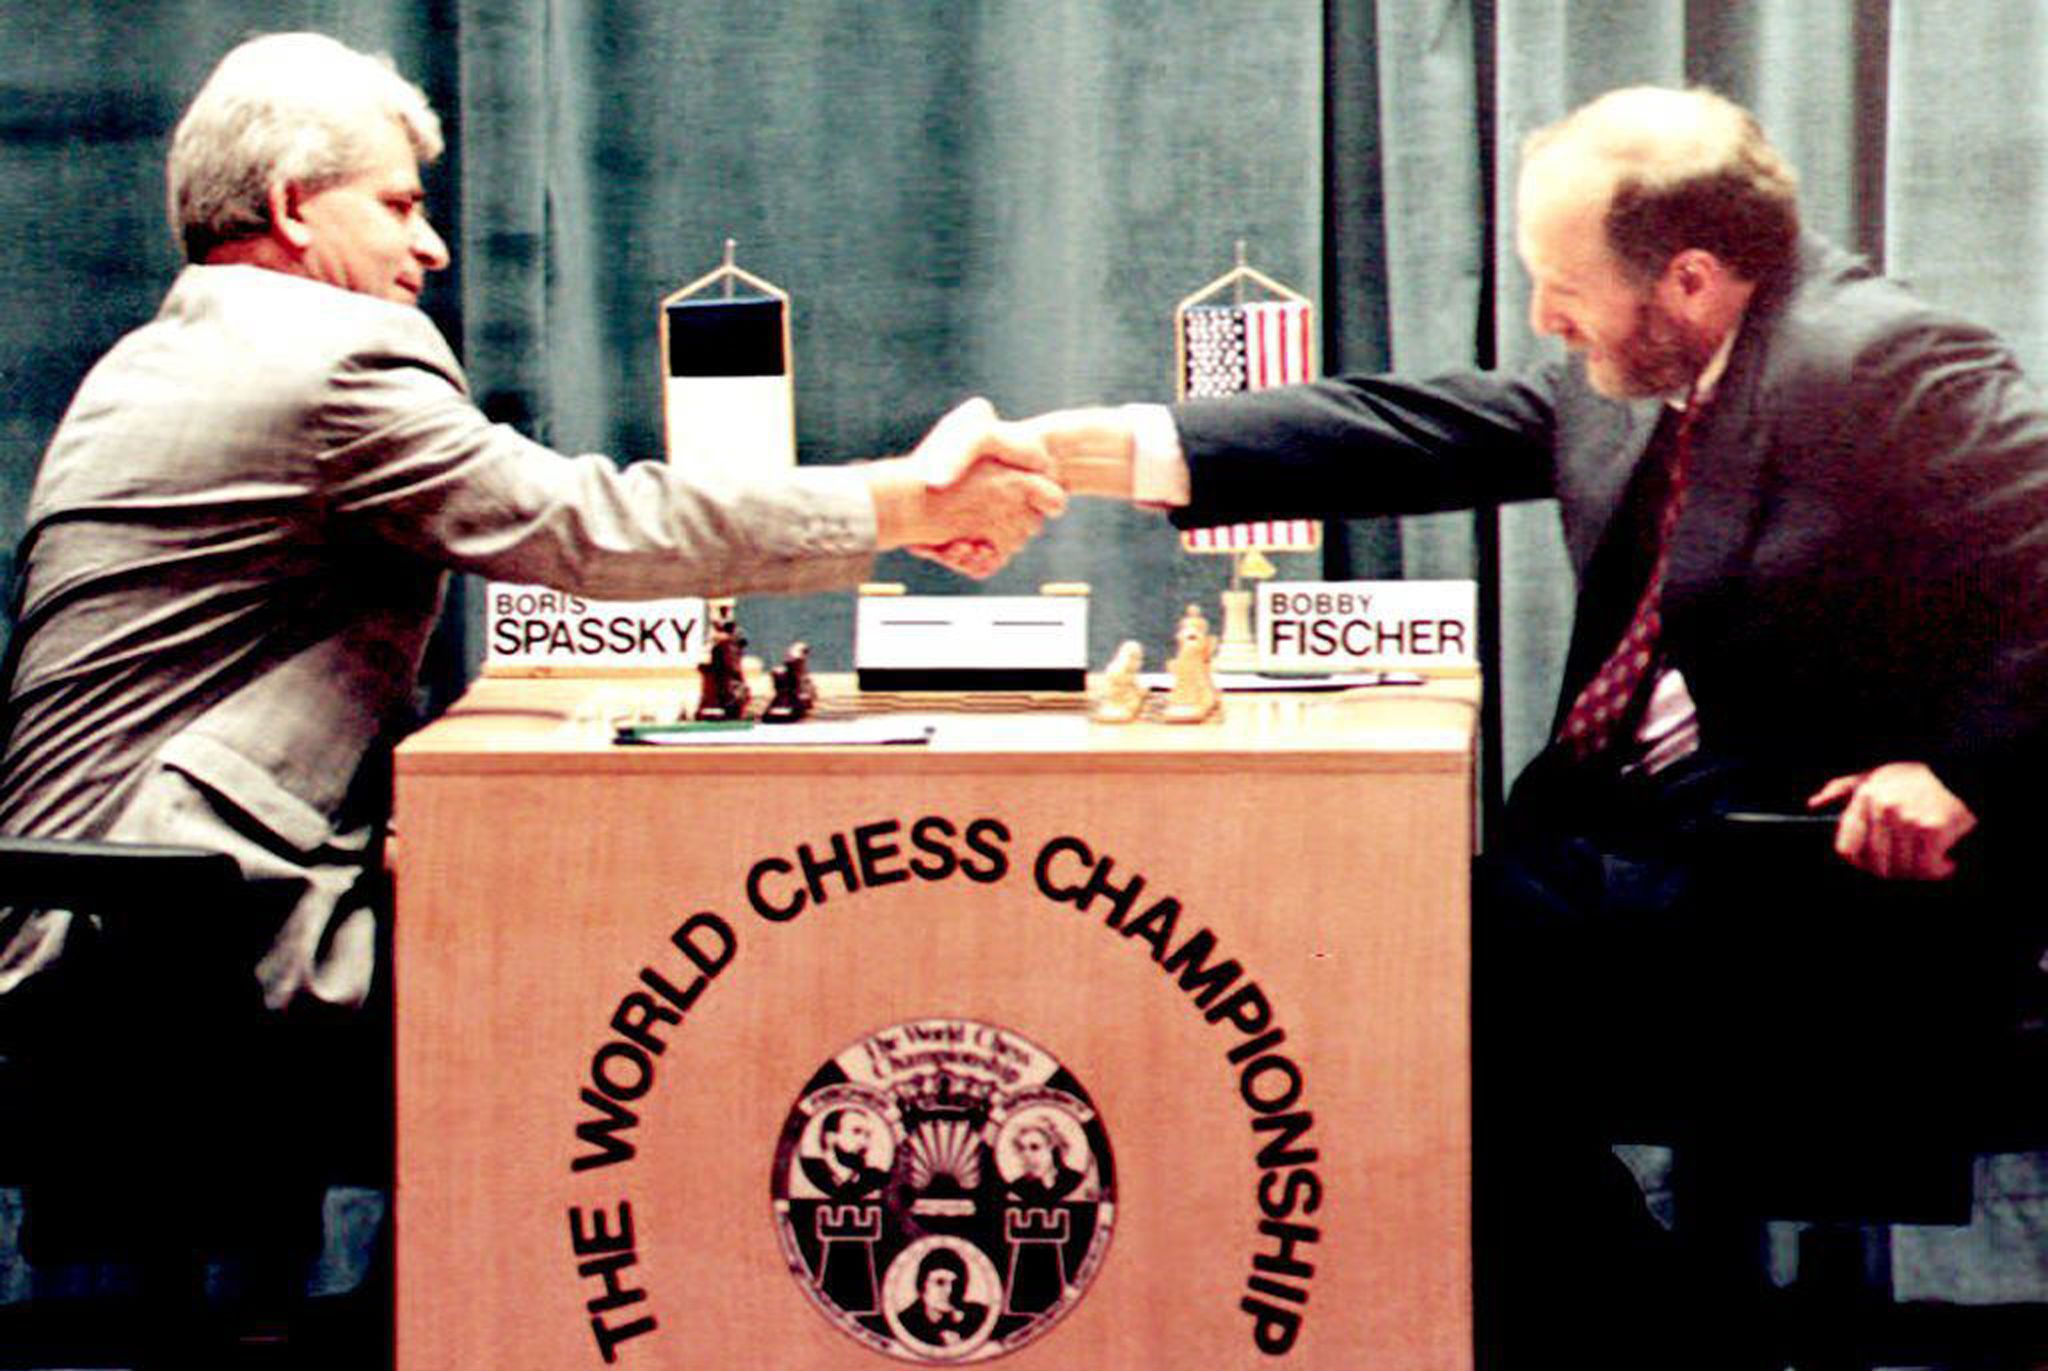 MUITO INTERESSANTE! Conhece a Siciliana Alapin? - Desafio Rapidchess Bobby  Fischer (Ep54) 